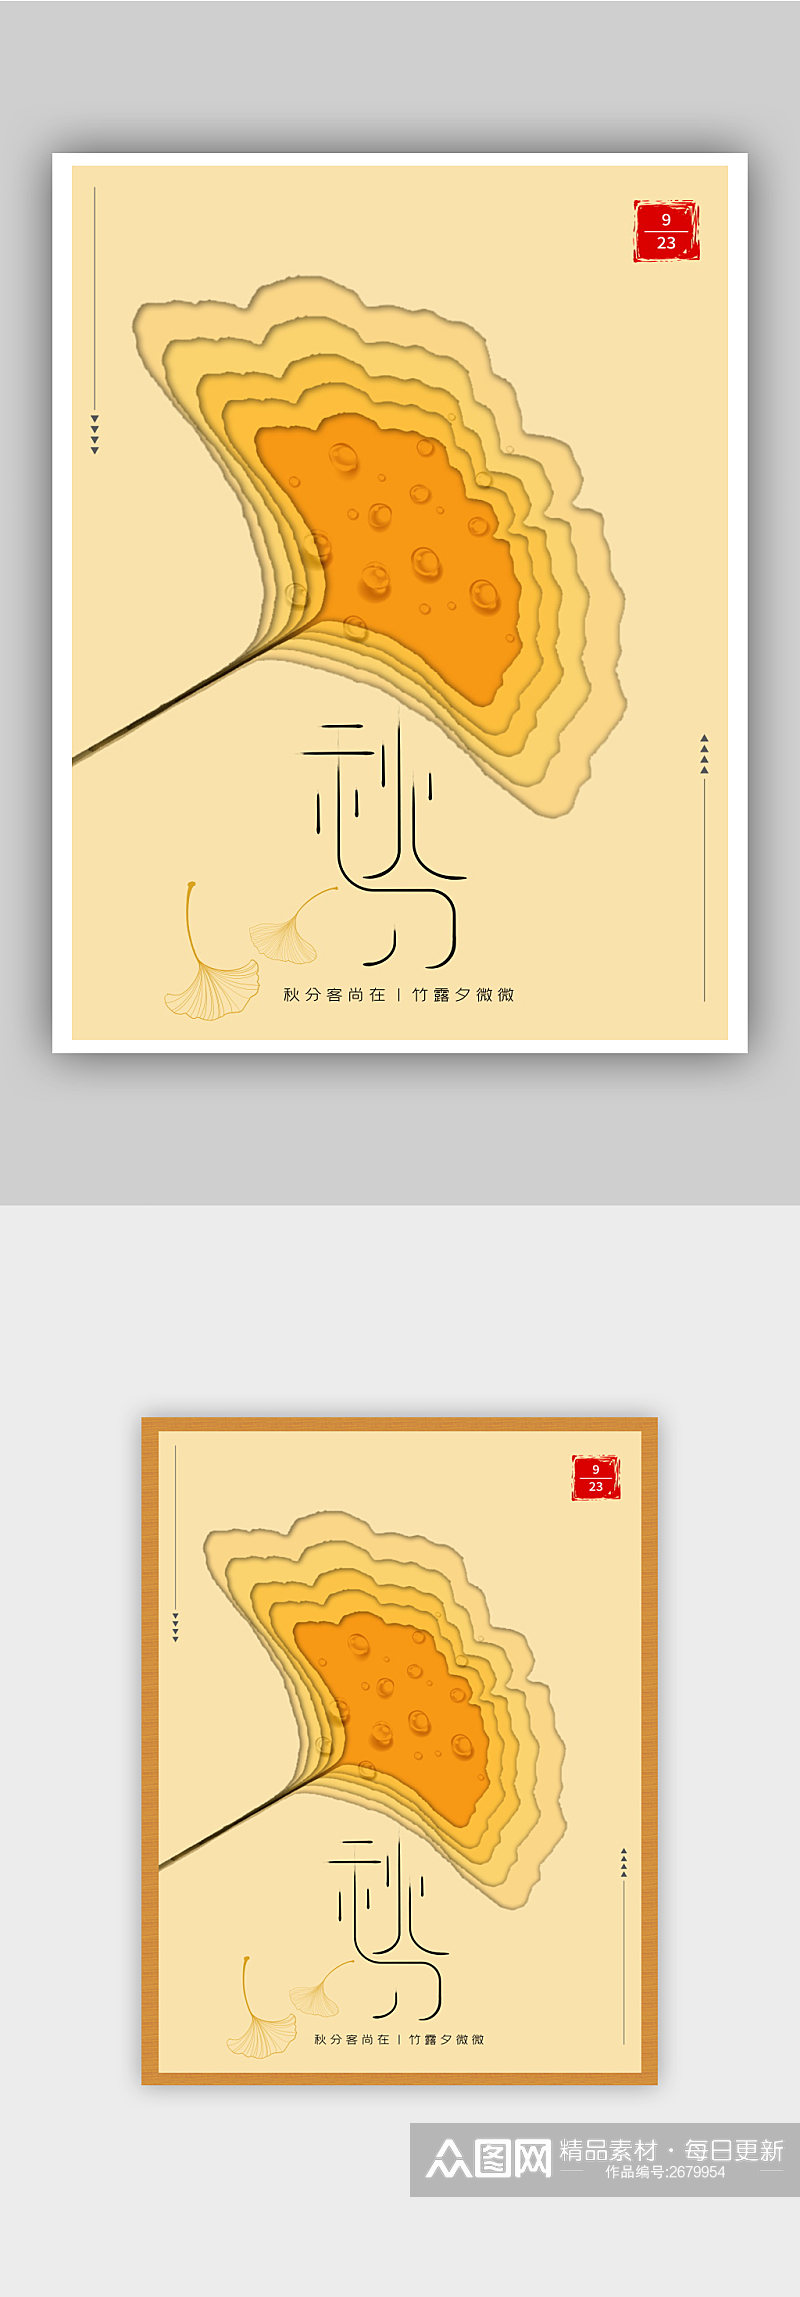 中国二十四节气秋分银杏叶渐变色海报素材